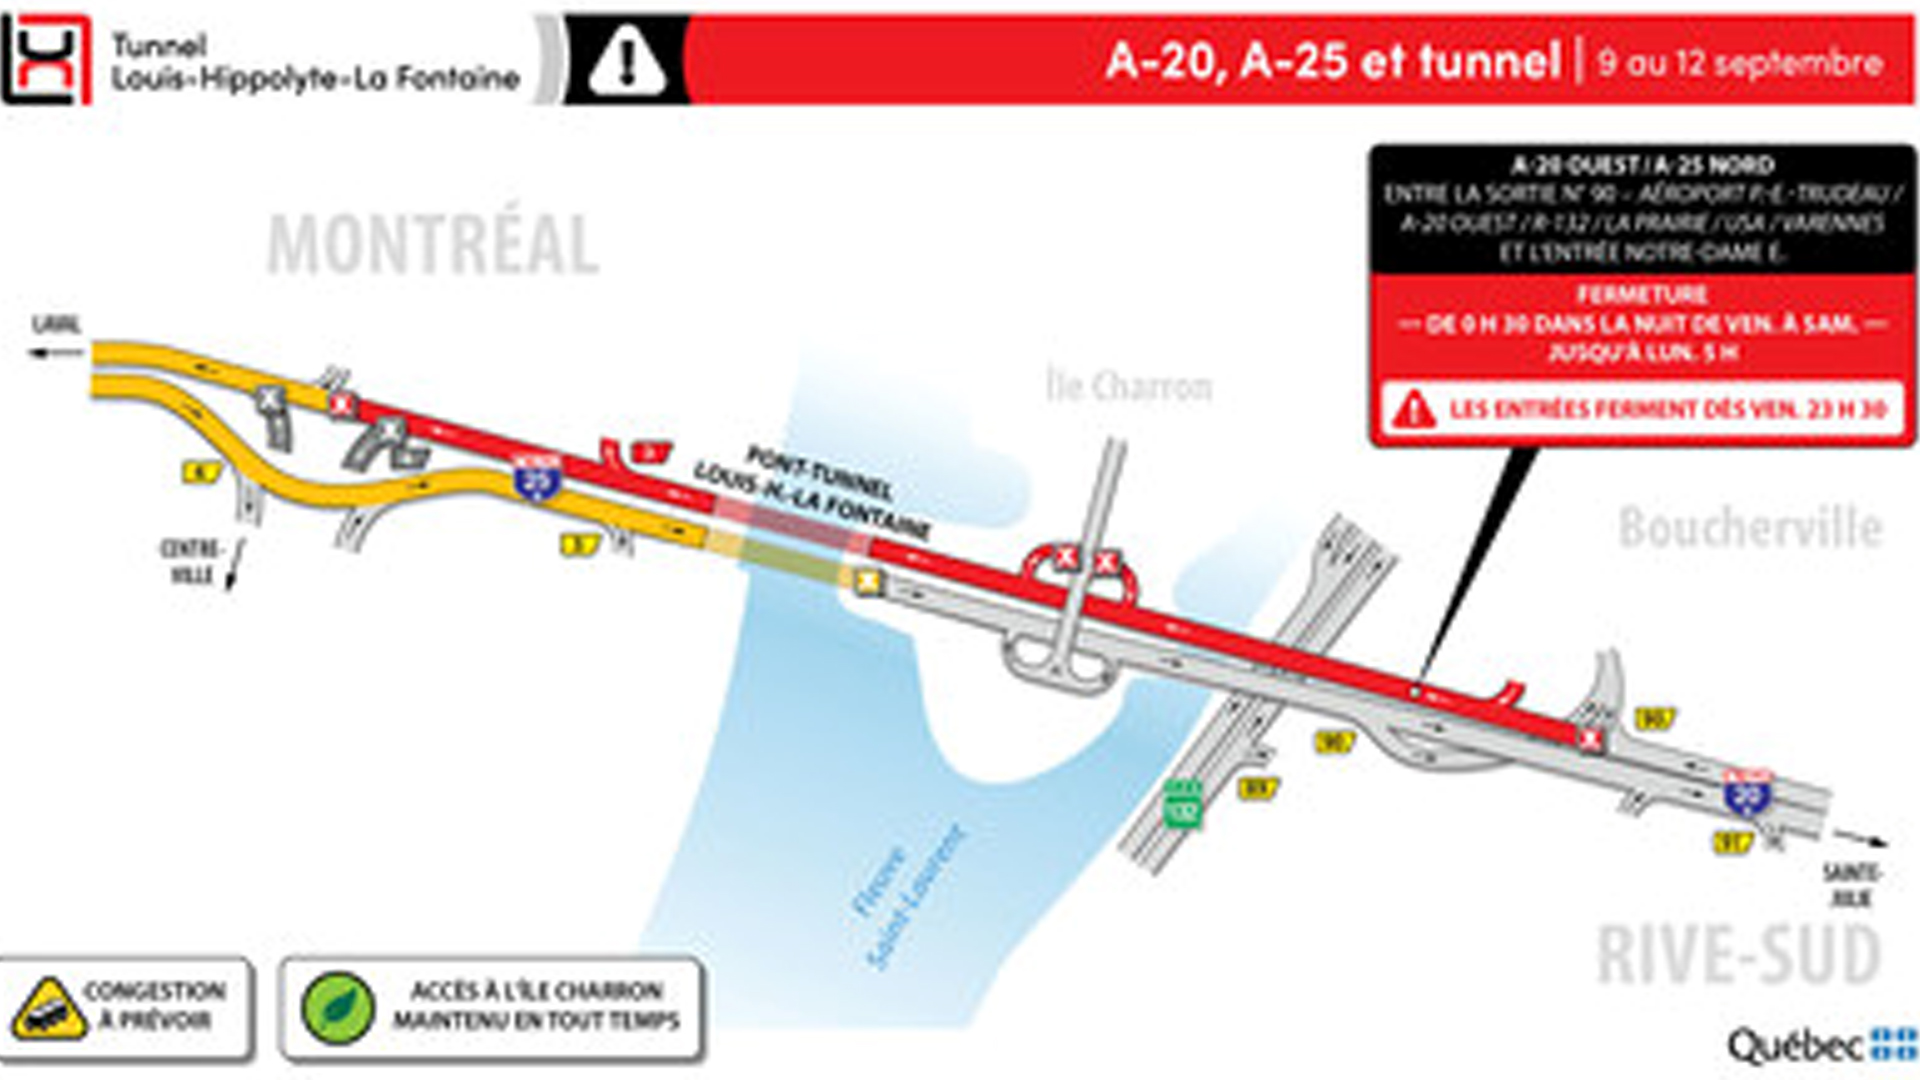 Le ministère des Transports a annoncé mercredi qu’une fermeture complète de l’autoroute 25 en direction de Montréal, incluant le pont-tunnel Louis-Hyppolyte-La Fontaine, sera mise en place du 9 au 12 septembre.